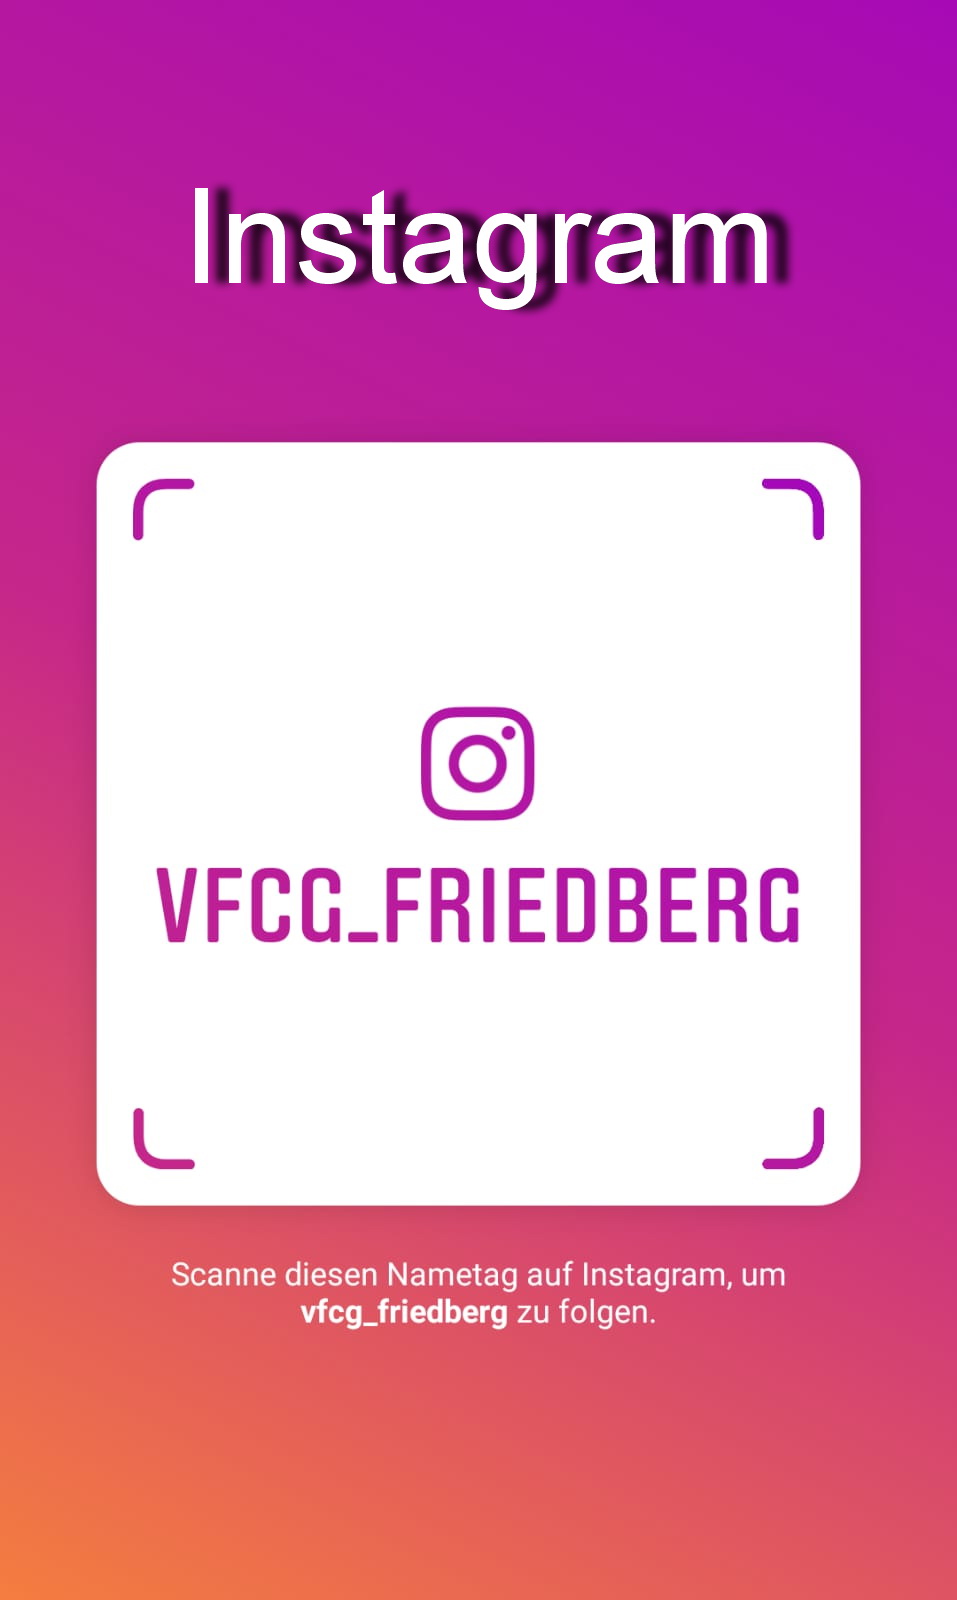 VFCG bei Instagram